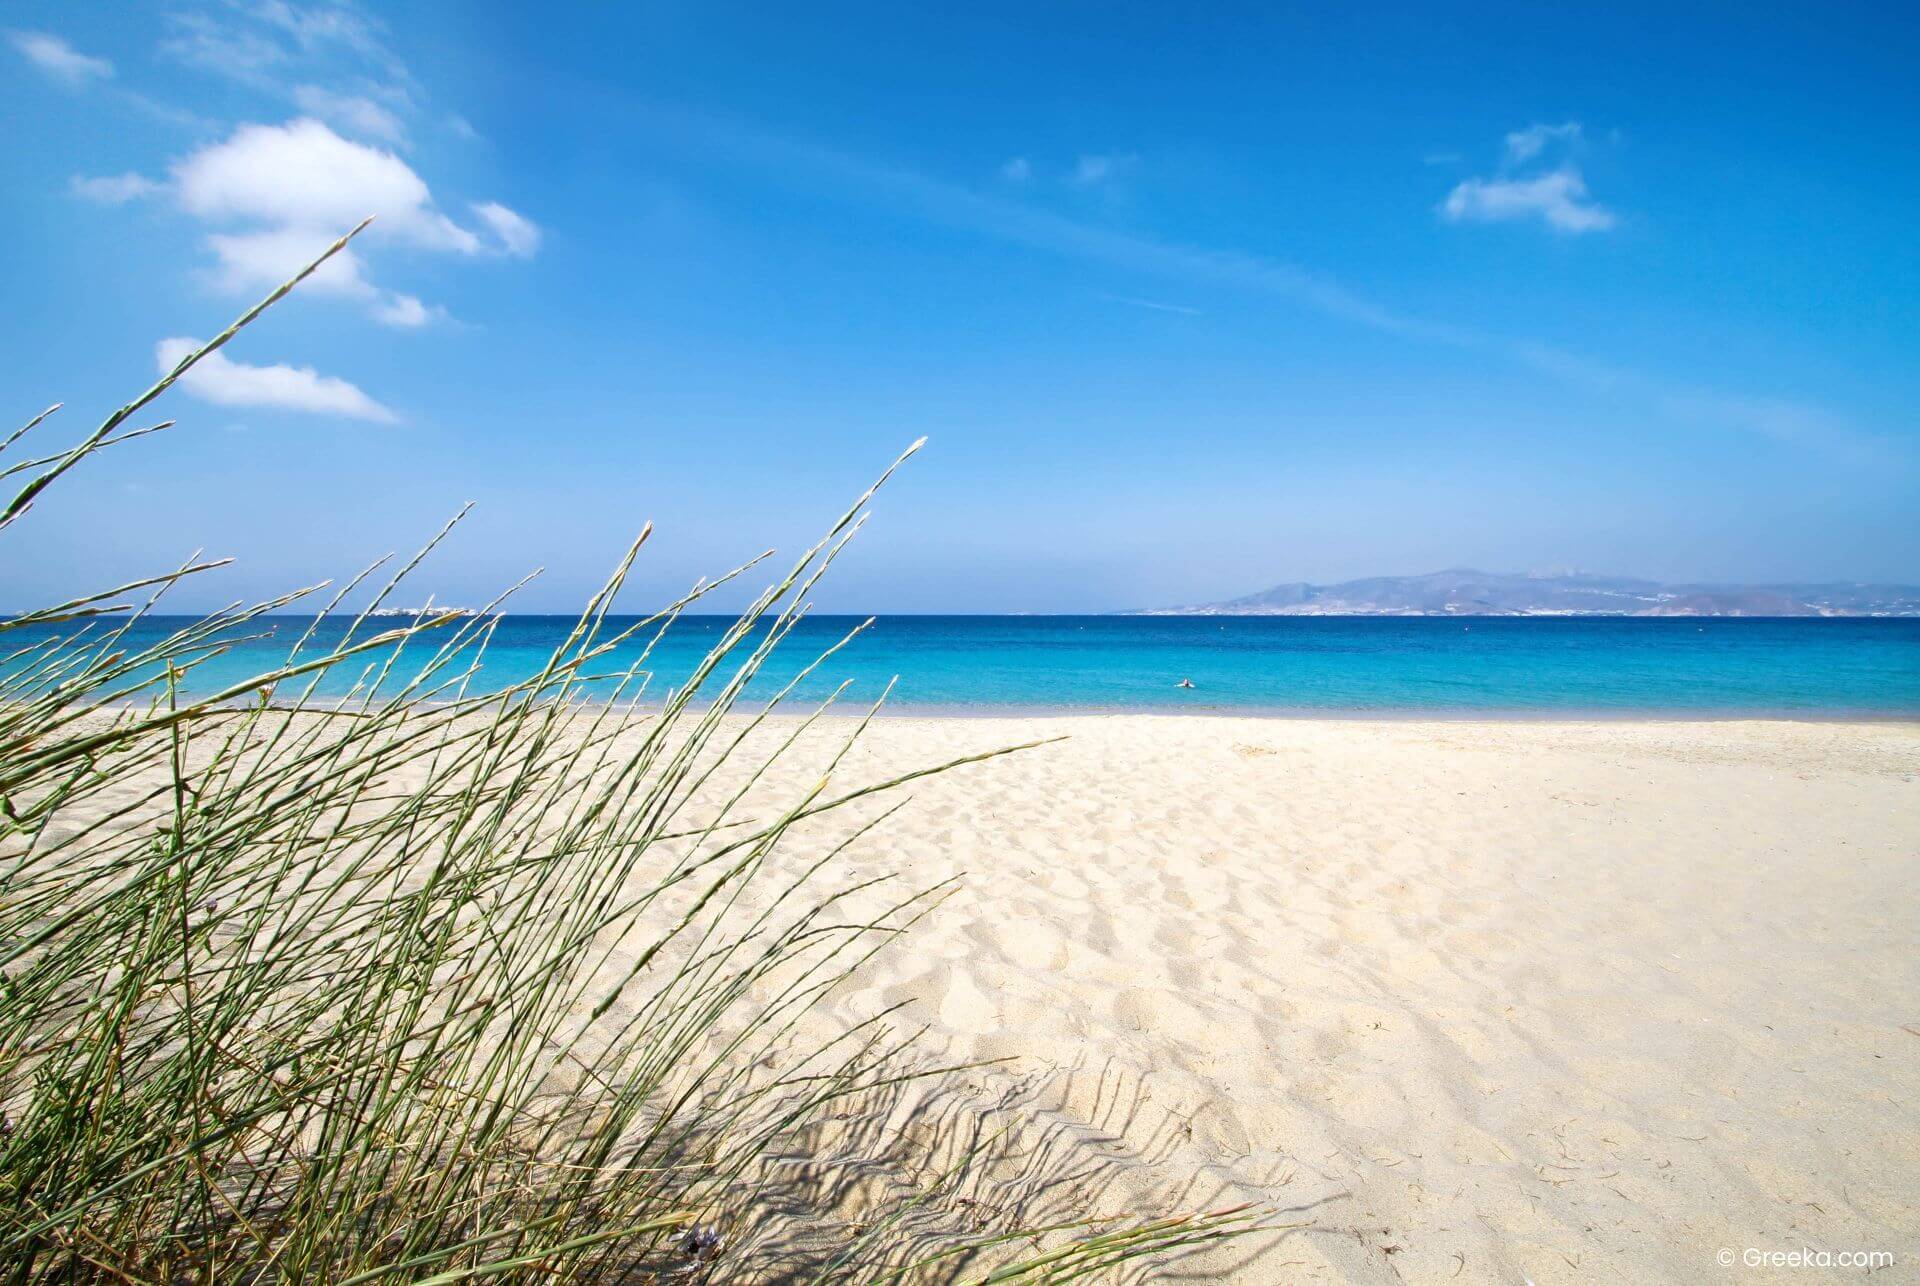 Plaka beach, the longest sandy beach on Naxos, Greece